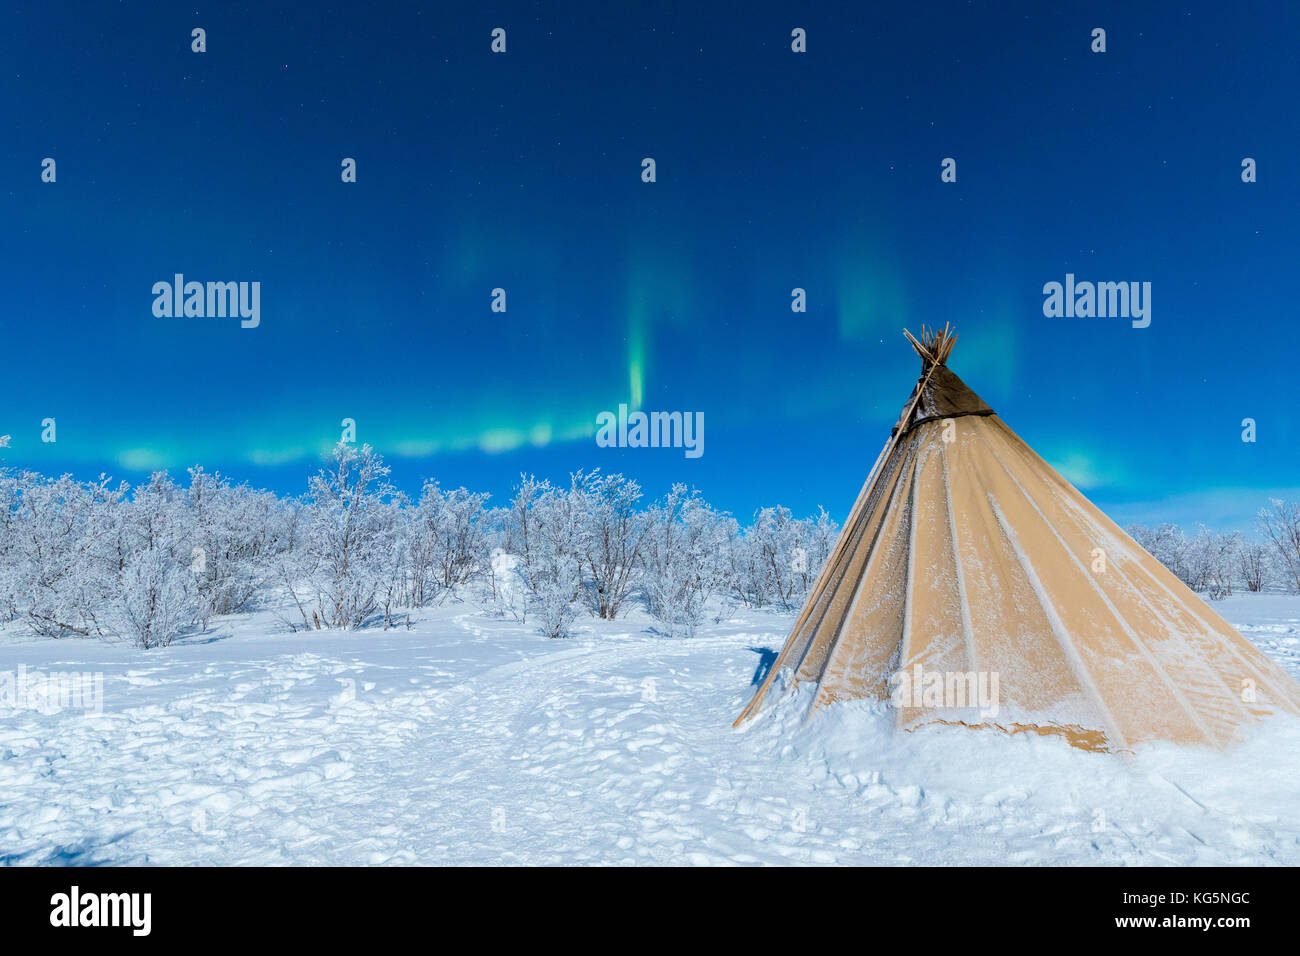 Sami isolé tente dans la neige sous les lumières du nord, abisko, municipalité du comté de Norrbotten, Kiruna, Lapland, Sweden Banque D'Images